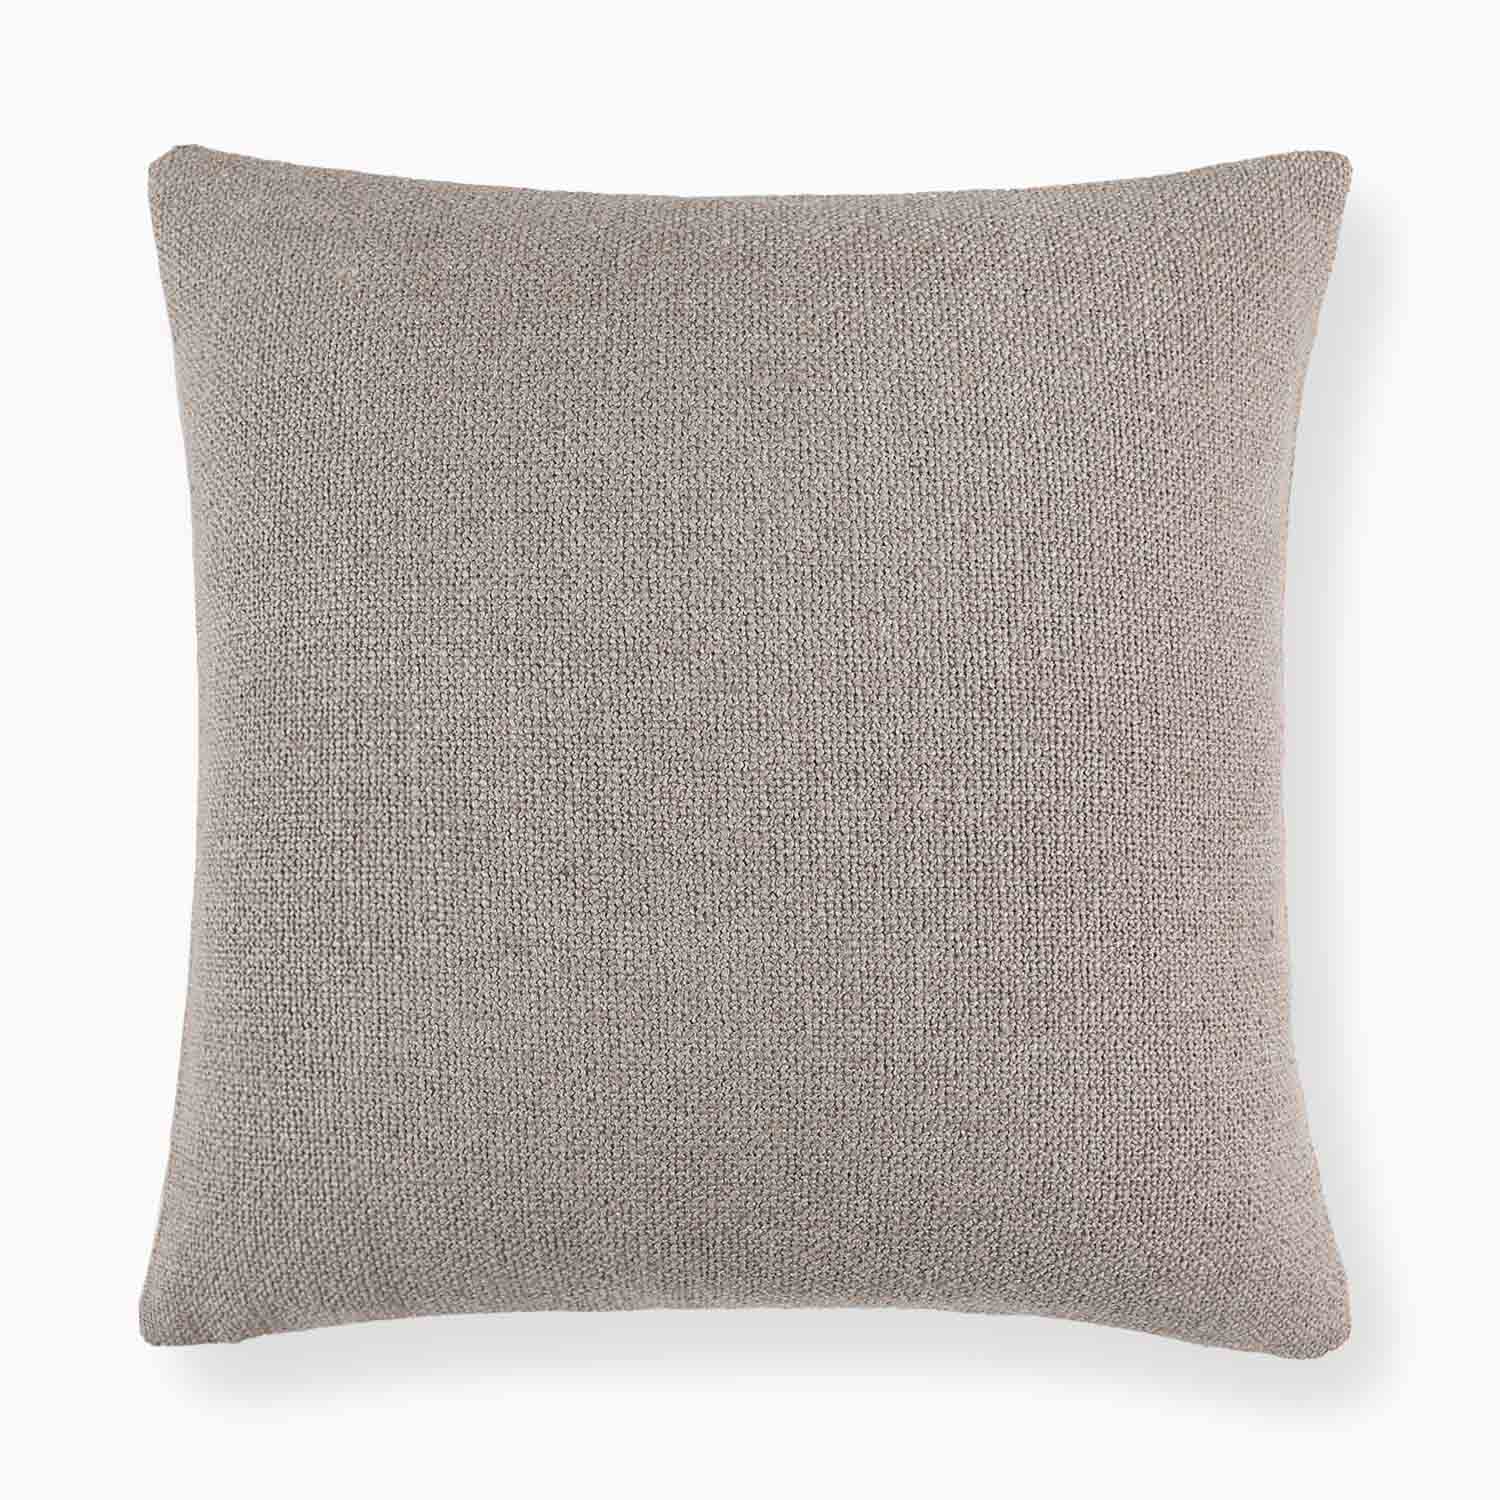 Savona Textured Linen Pillow Cover-18x18 linen pillow cover